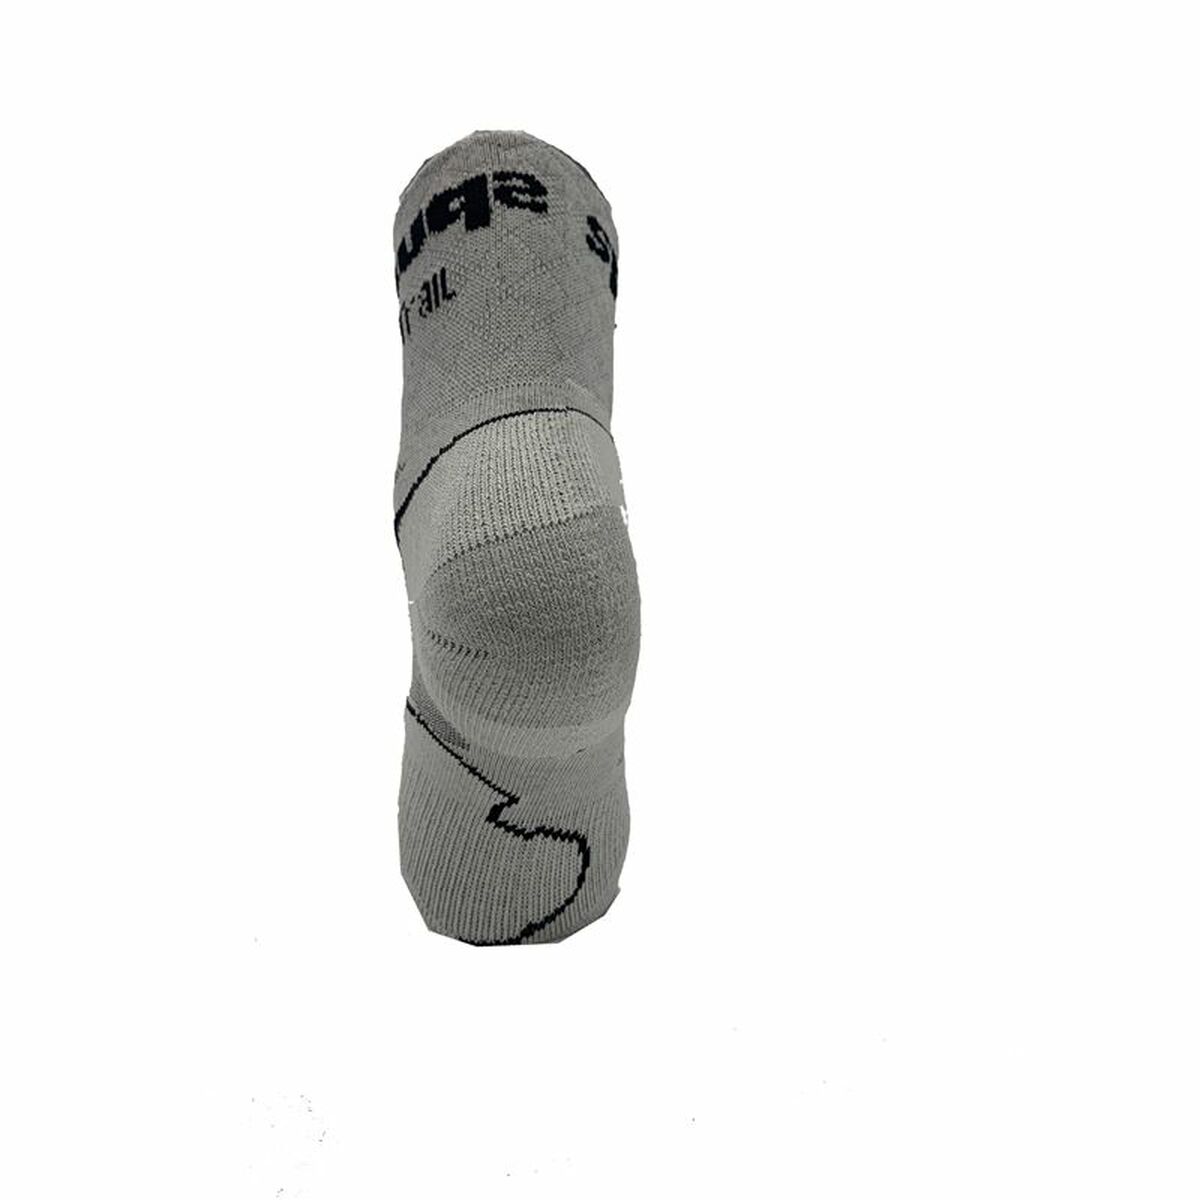 Sports Socks Spuqs Coolmax Protect Grey